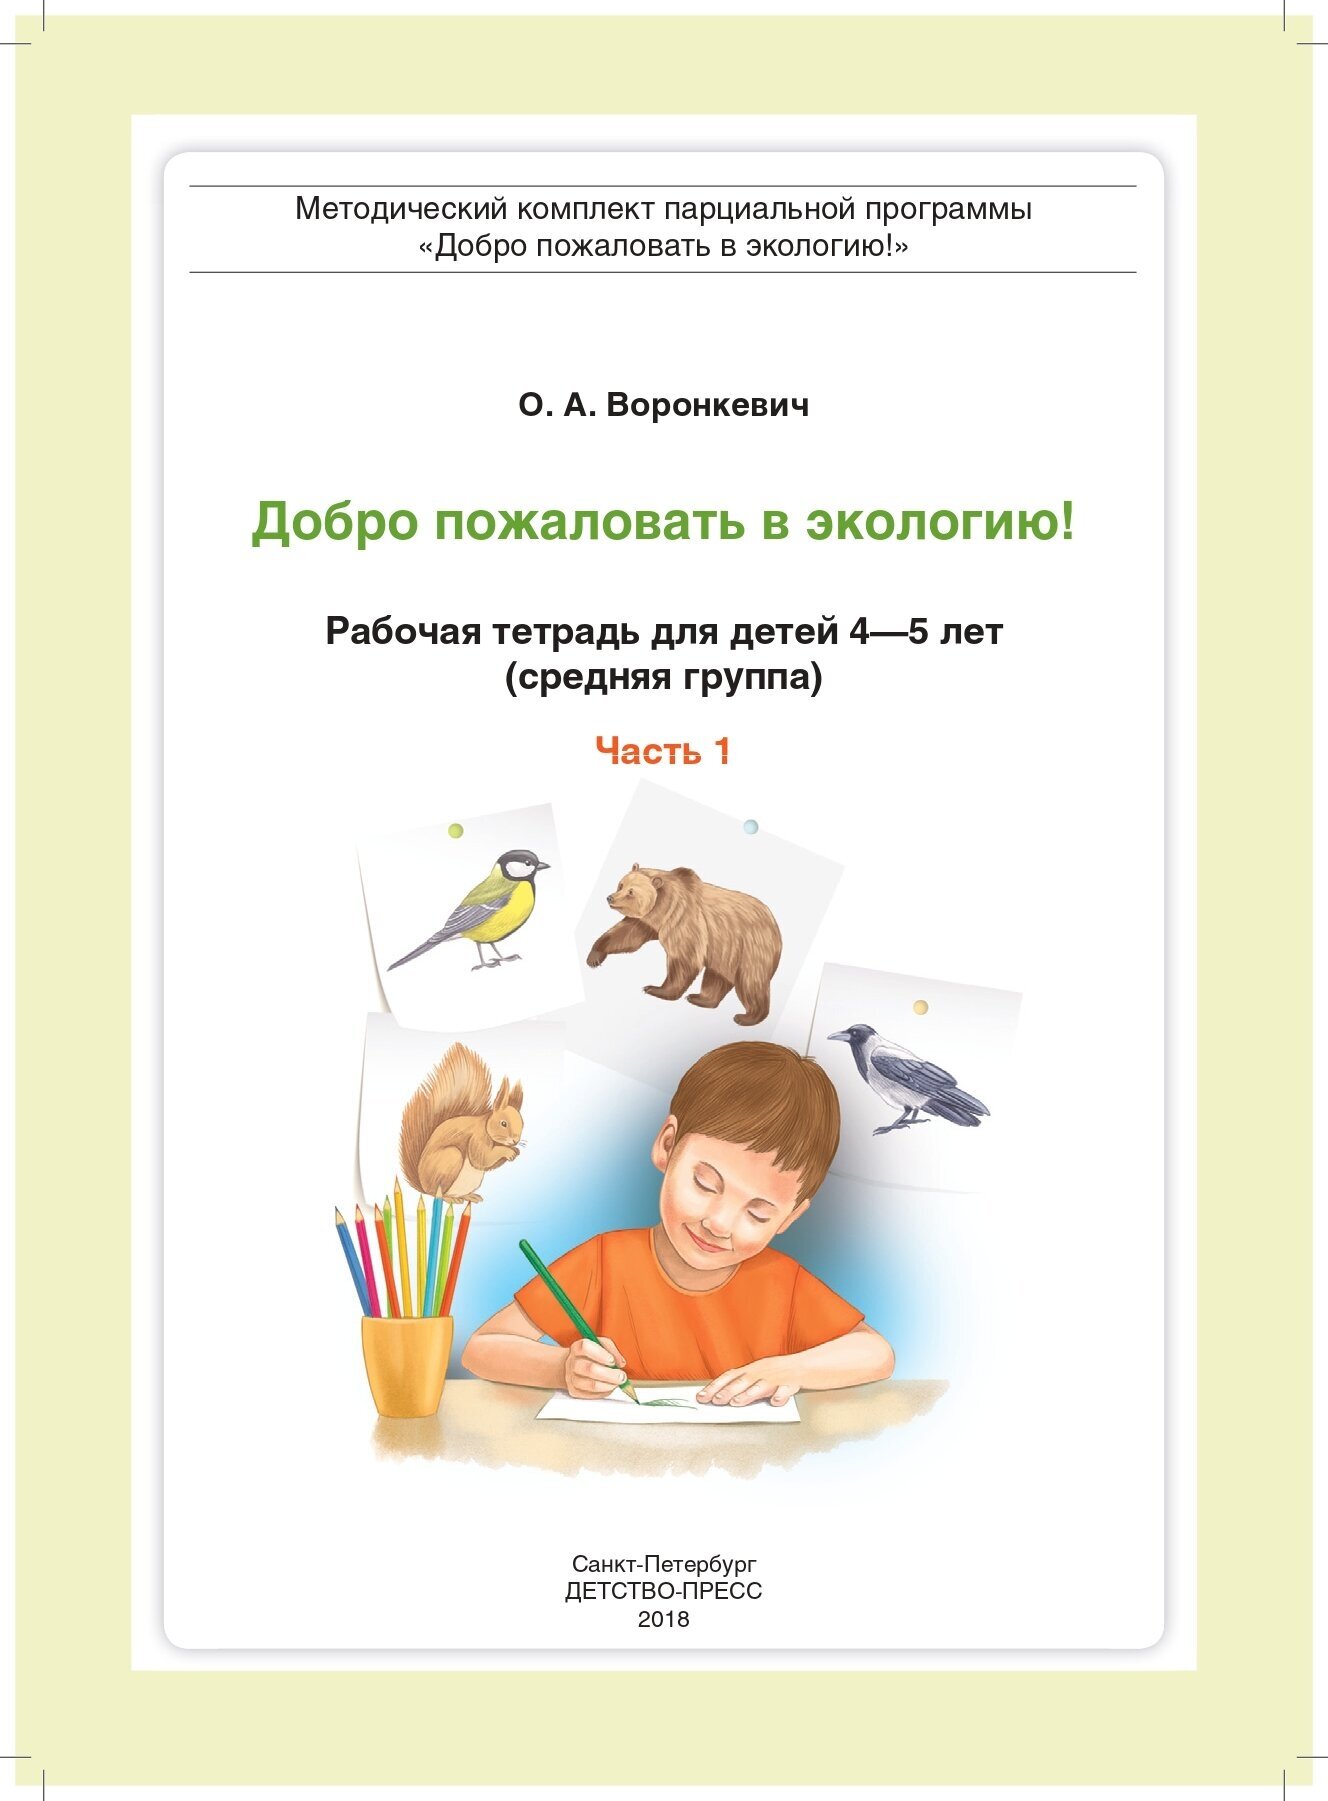 Добро пожаловать в экологию! Рабочая тетрадь для детей 4-5 лет (средняя группа). Часть 1. - фото №9